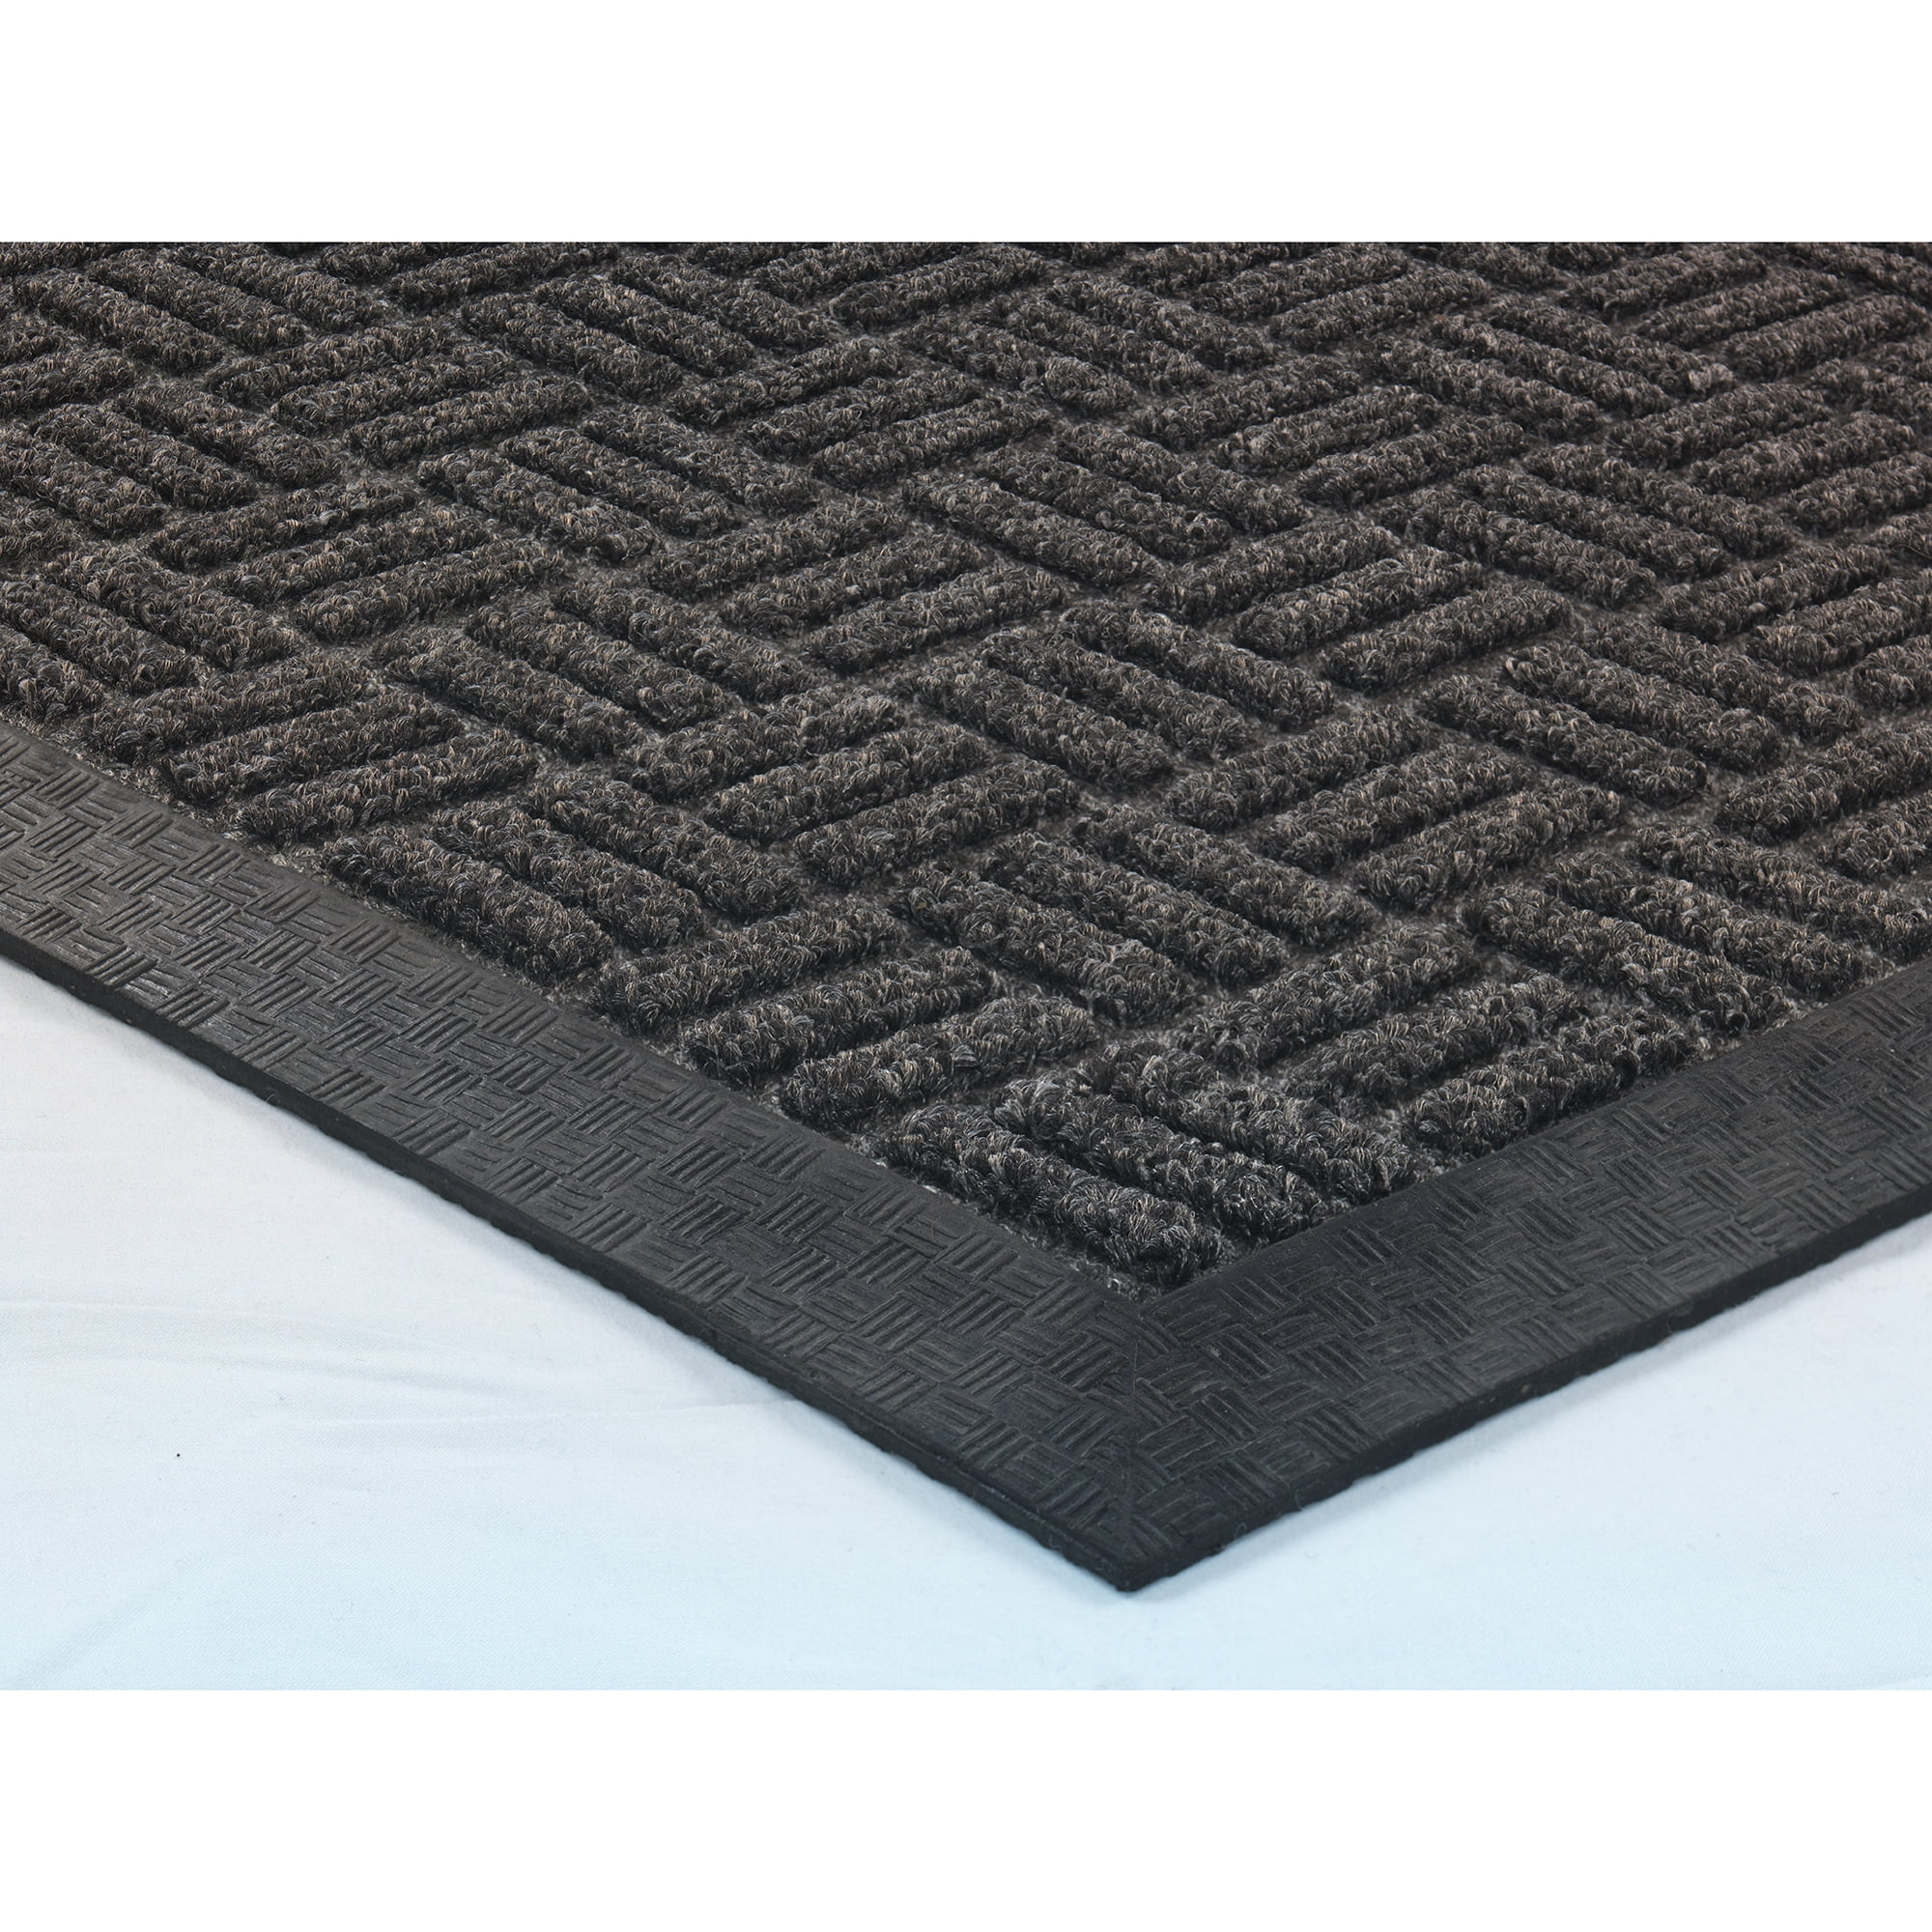 Ahron Non-Slip Geometric Outdoor Doormat